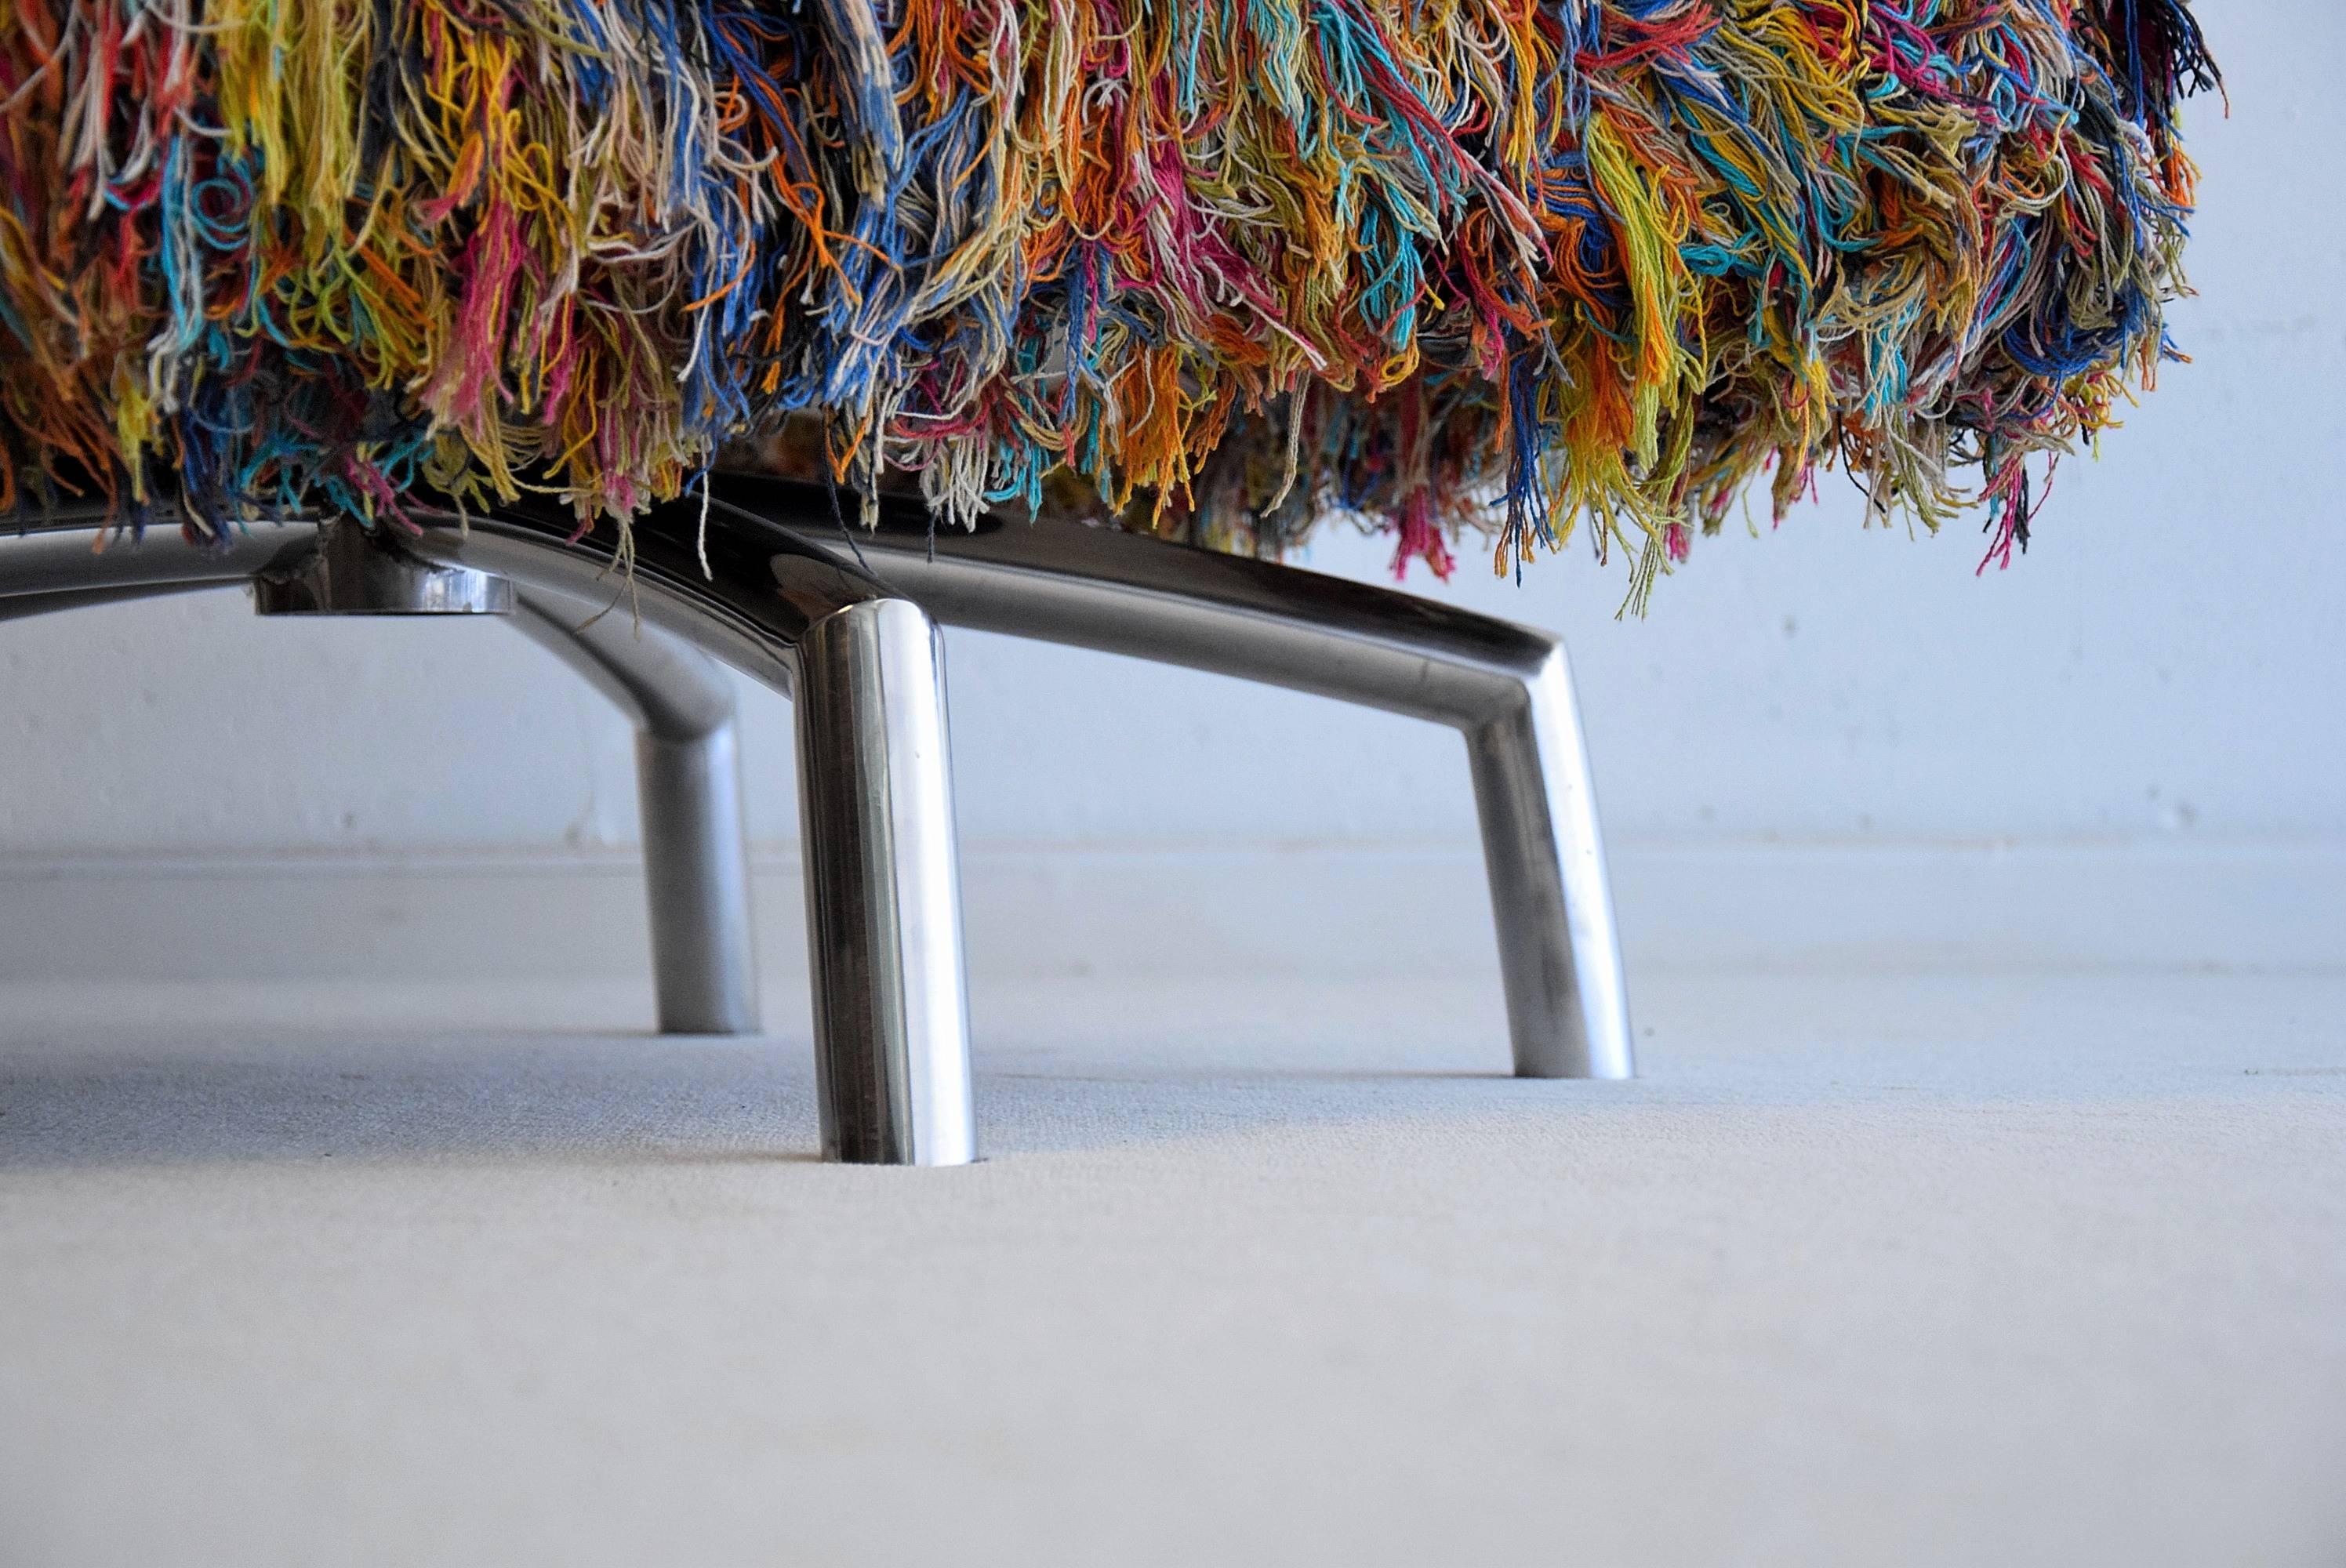 Drehstuhl Giramundo.
Entworfen von Thomas Bina von Environment Furniture aus Los Angeles, ca. 2007.

Er wird aus recyceltem, brasilianischem, mehrfarbigem Baumwollgarn hergestellt und ist auf polierten Edelstahlbeinen drehbar.

Abmessungen: H 66 x B